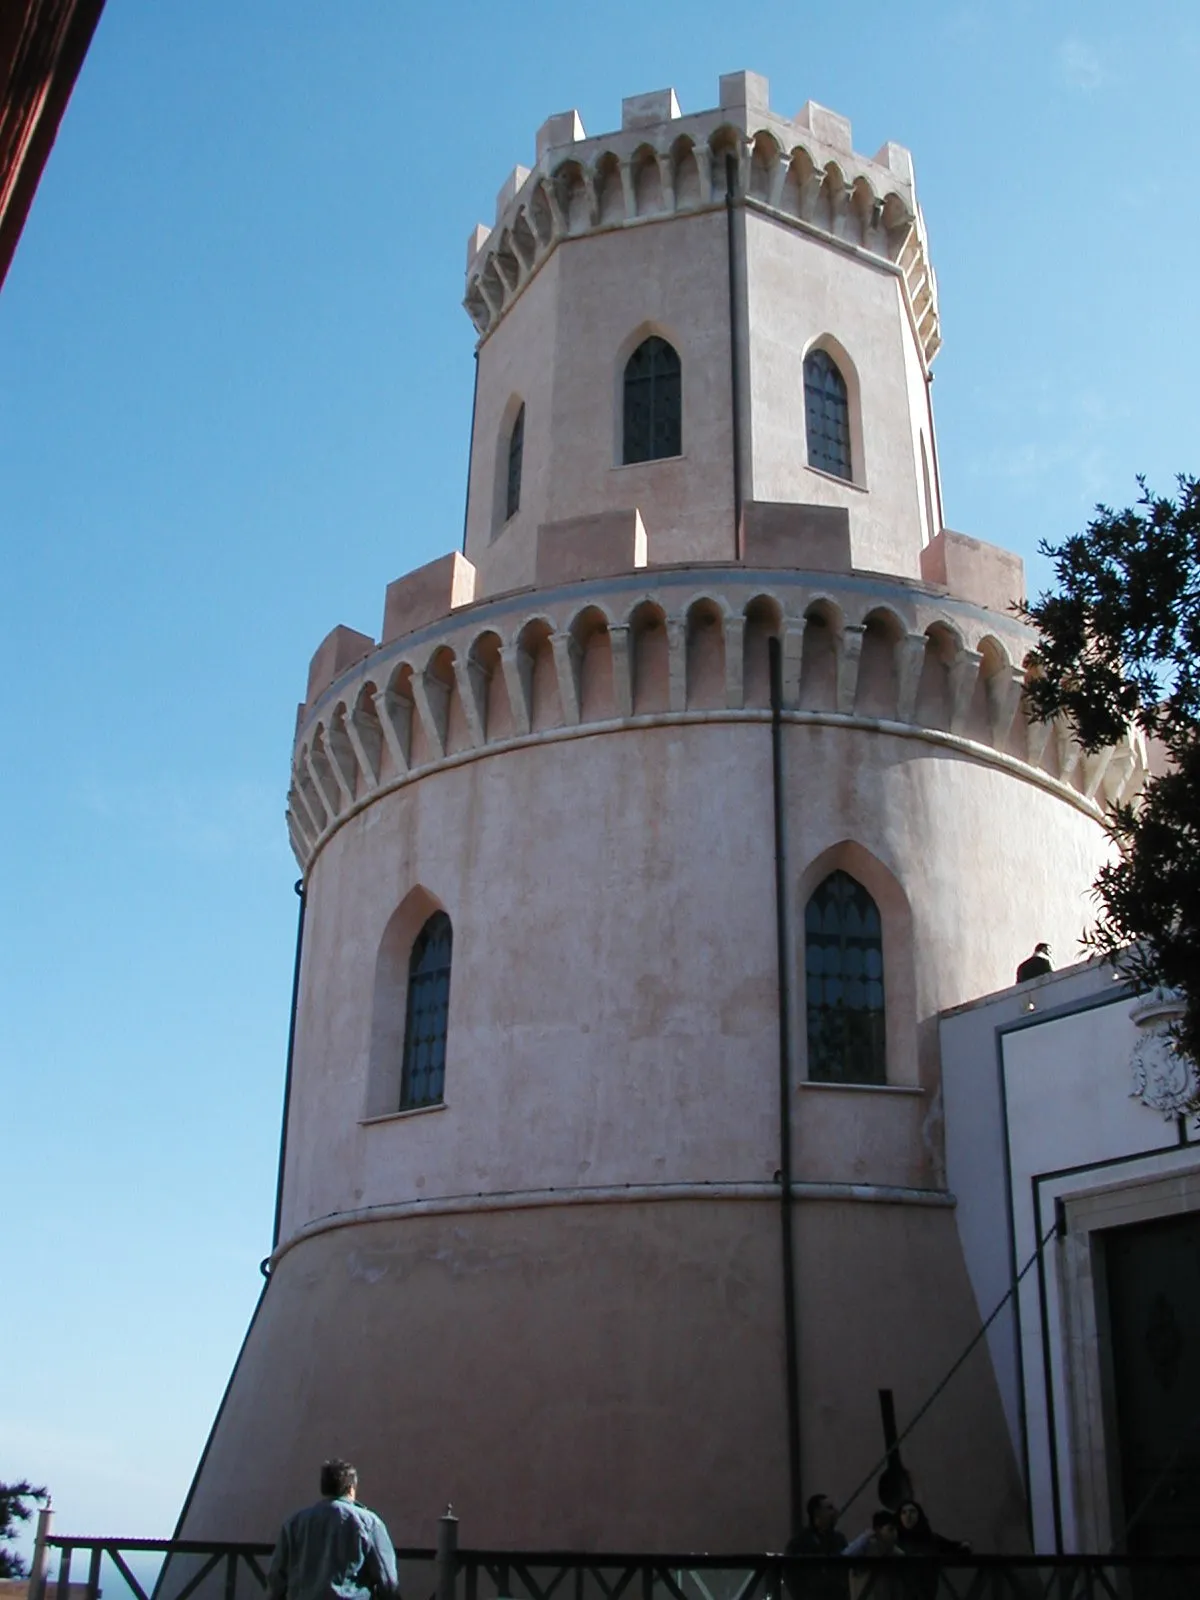 Photo showing: Corigliano Calabro - Torre del castello

Foto di Luigino C.